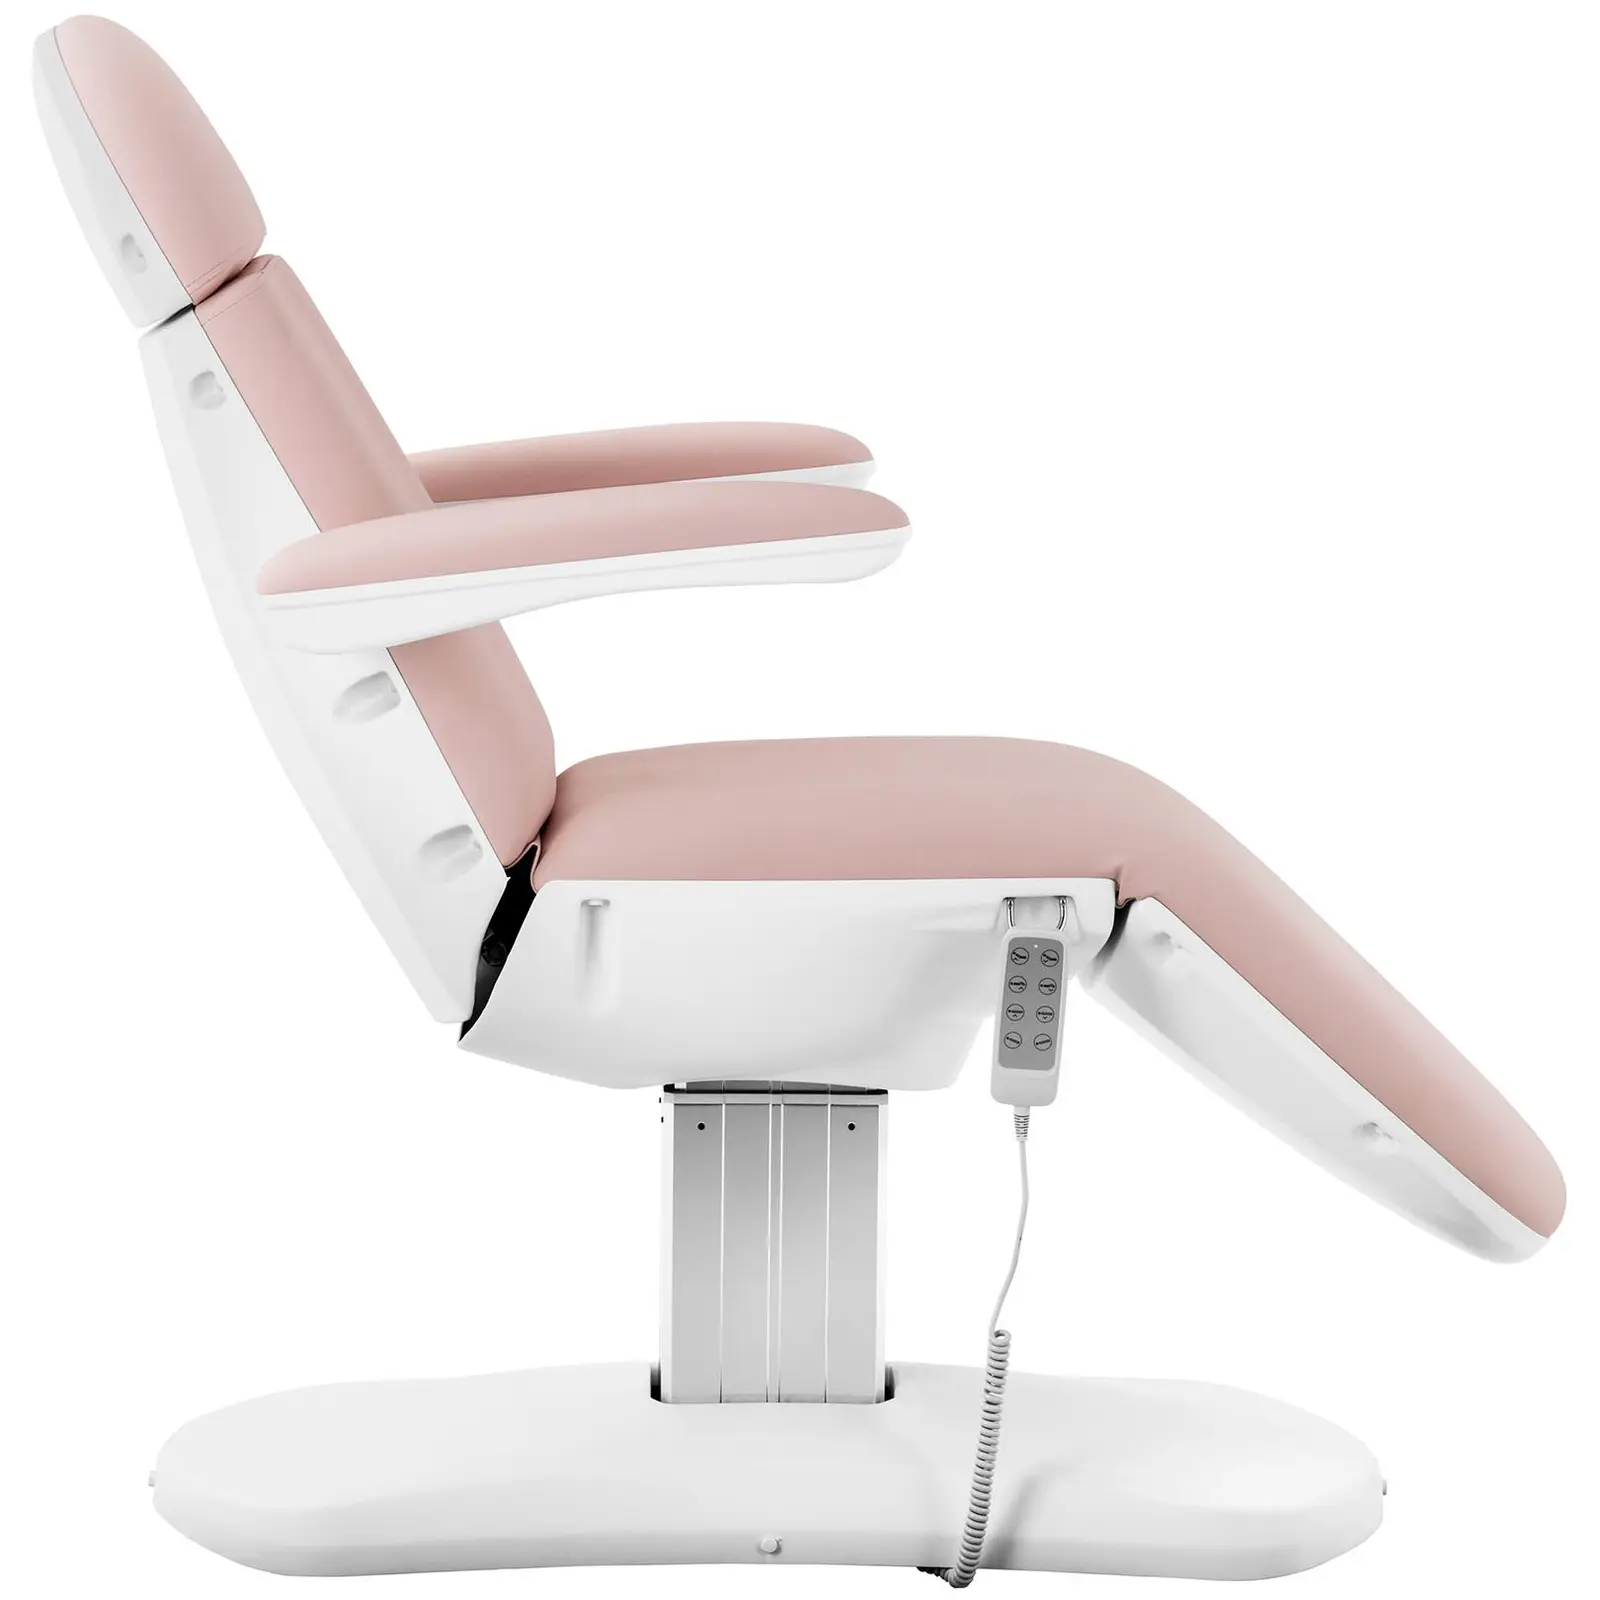 Poltrona pedicure - 350 W - 150 kg - Pink, White